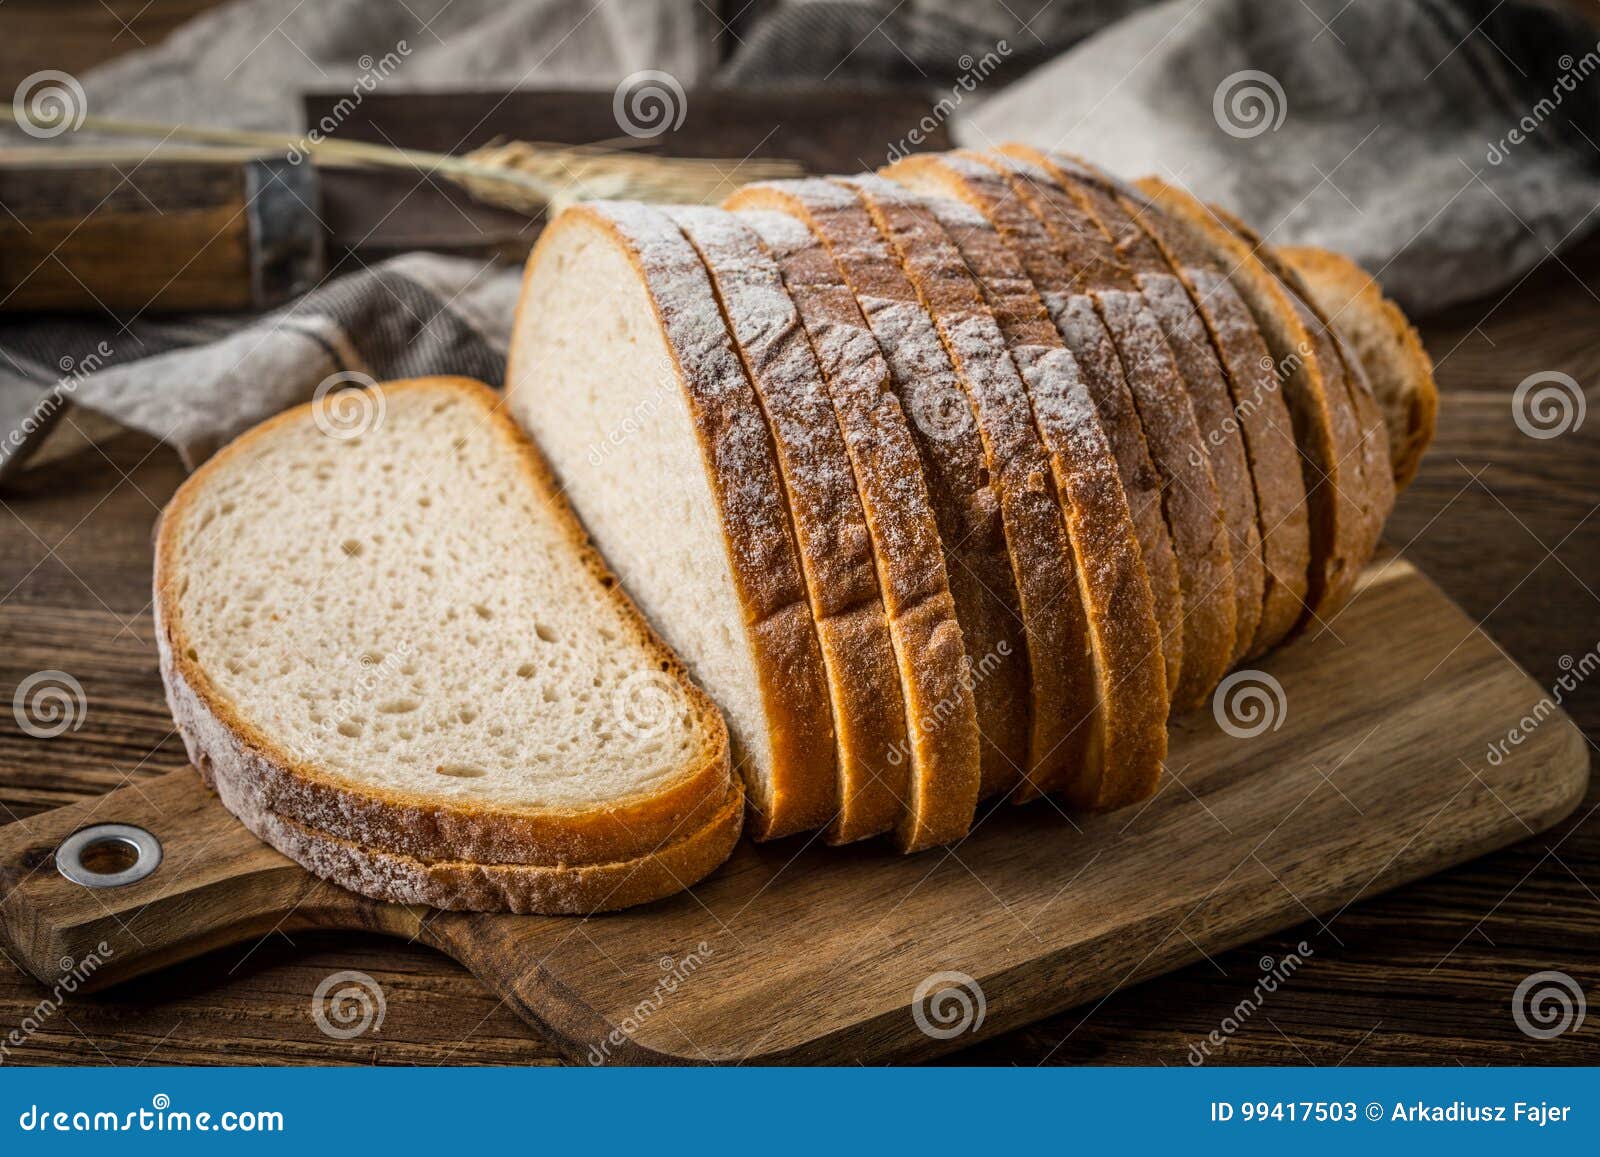 Копченый хлеб. Нарезанный хлеб. Ломтик хлеба красивый. Разрезанный хлеб. Красиво нарезать хлеб.